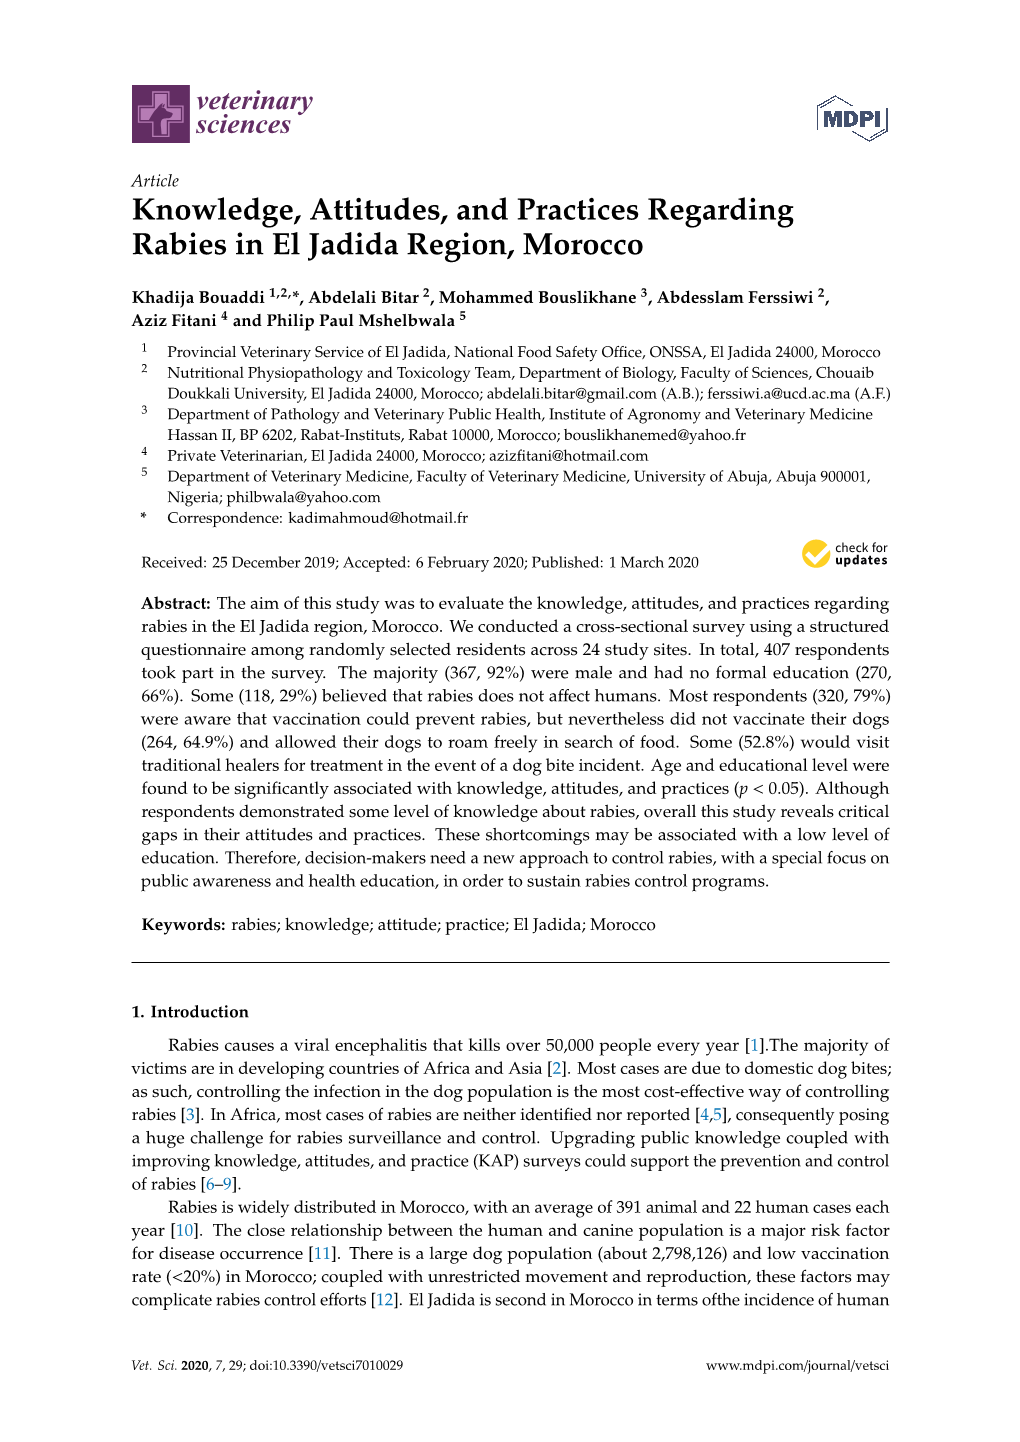 Knowledge, Attitudes, and Practices Regarding Rabies in El Jadida Region, Morocco